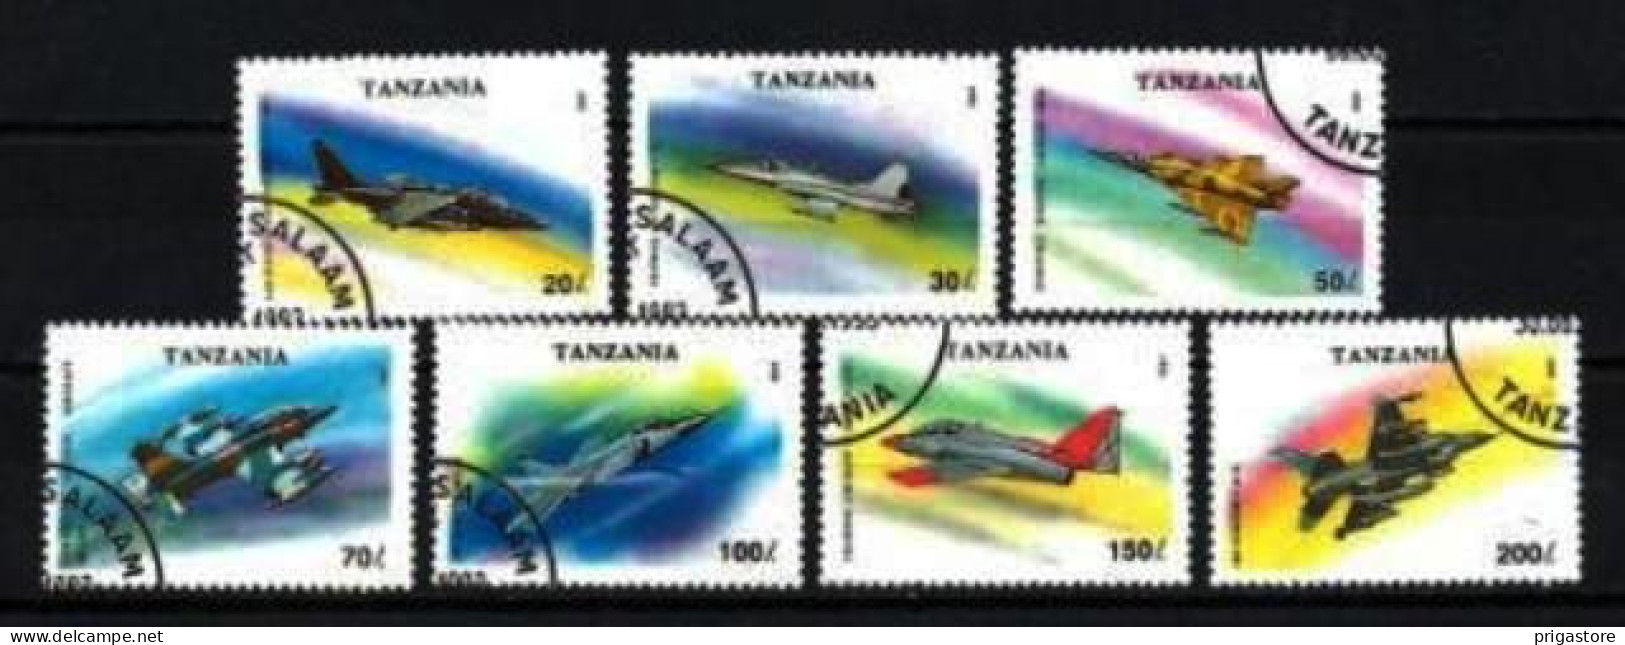 Tanzanie 1994 Avions (50) Yvert N° 1456 à 1462 Oblitéré Used - Tansania (1964-...)